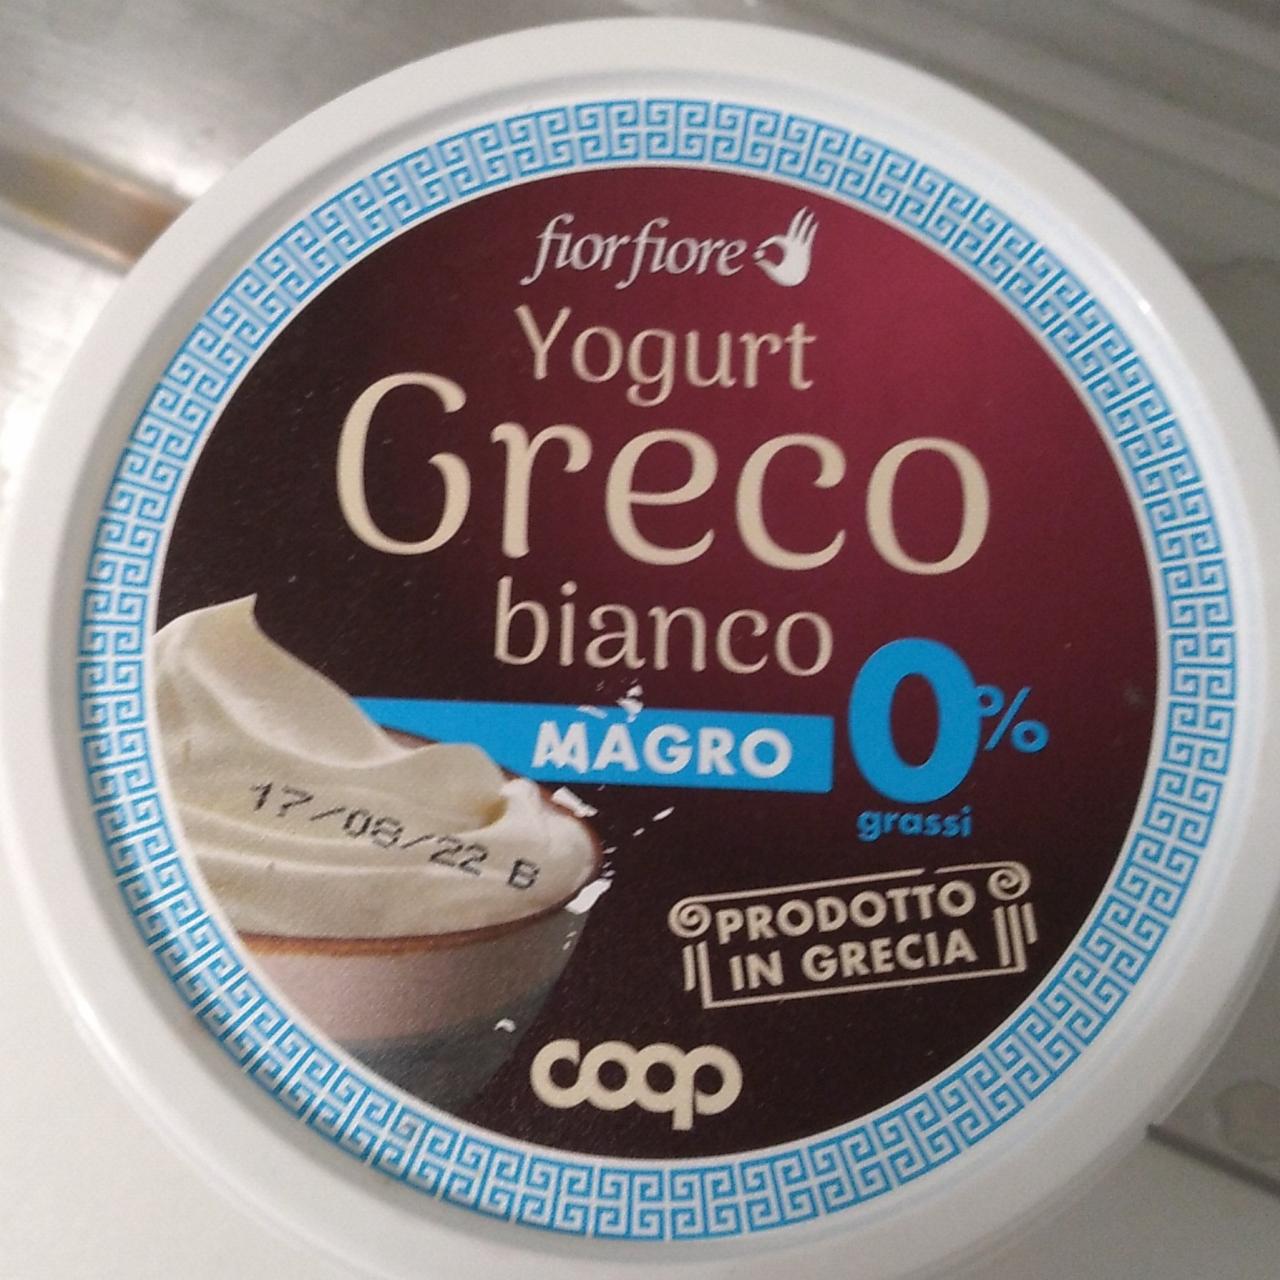 Fotografie - Yogurt Greco bianco Magro 0% grassi FiorFiore Coop